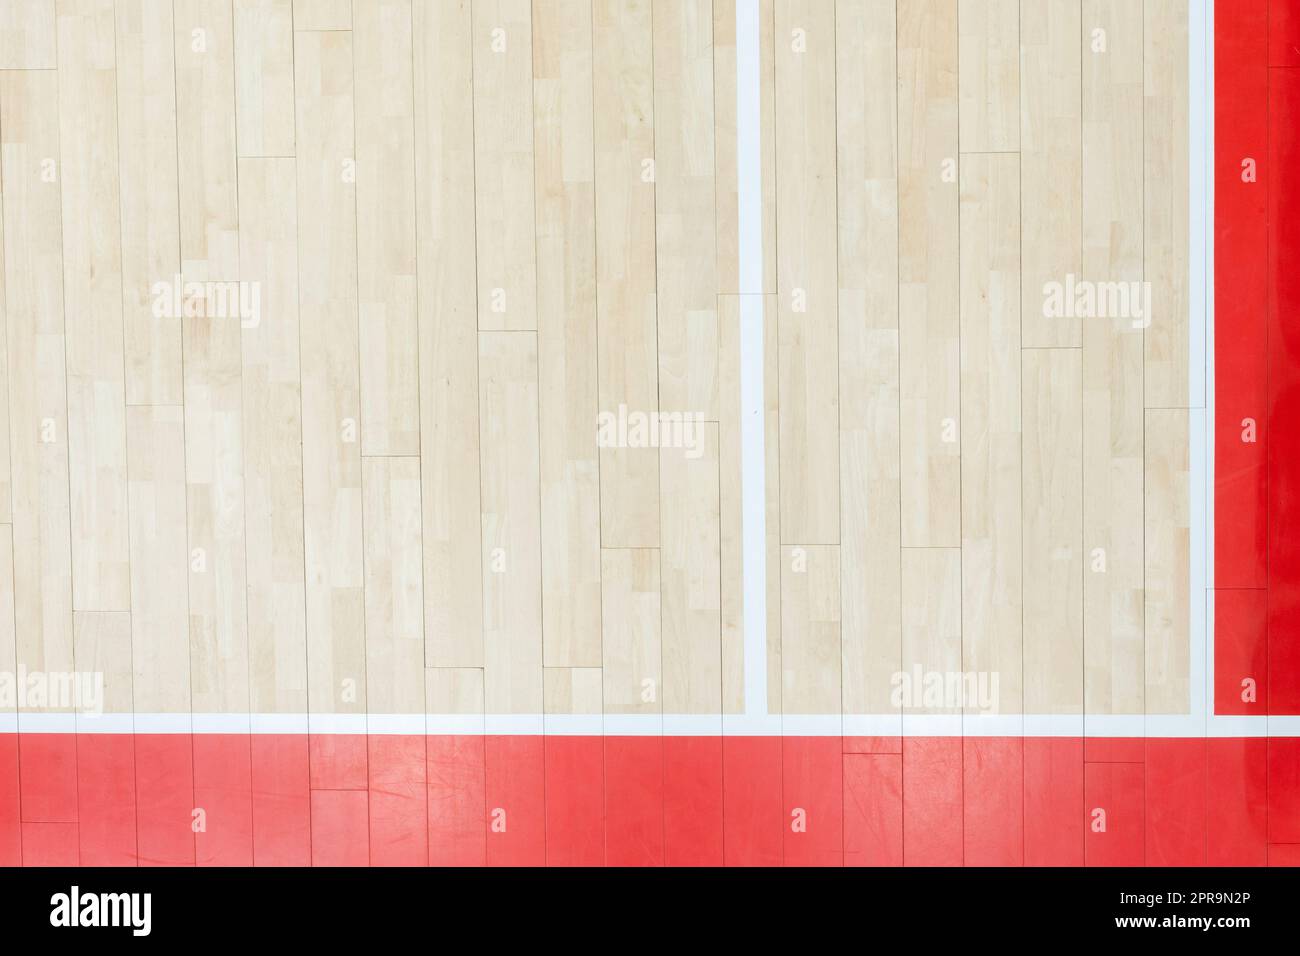 Holzboden Volleyball, Basketball, Badminton, Futsal, Handballplatz. Holzboden der Sporthalle mit Markierungslinien auf Holzboden innen, gy Stockfoto